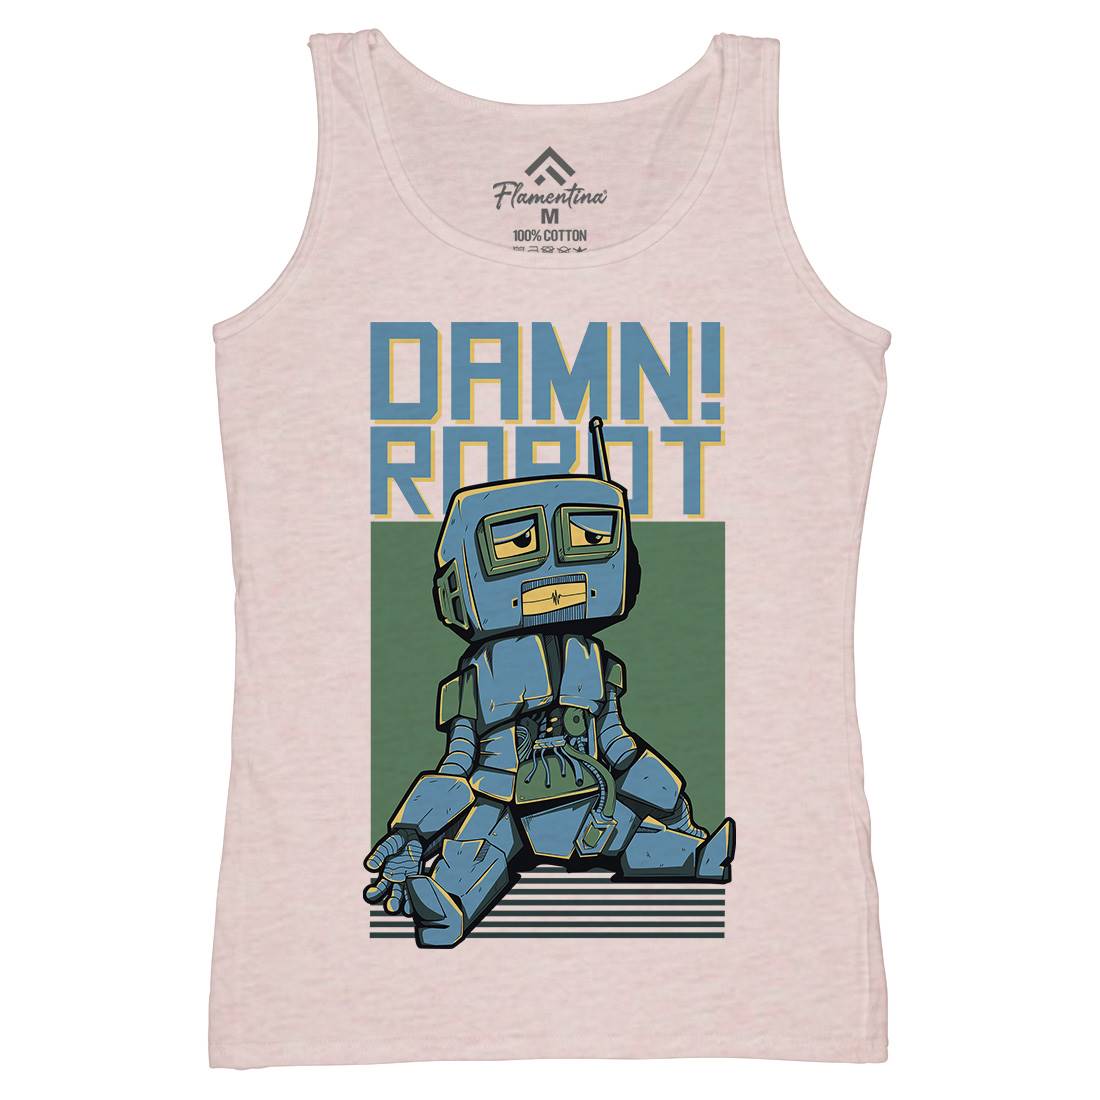 Damn Robot Womens Organic Tank Top Vest Space D743